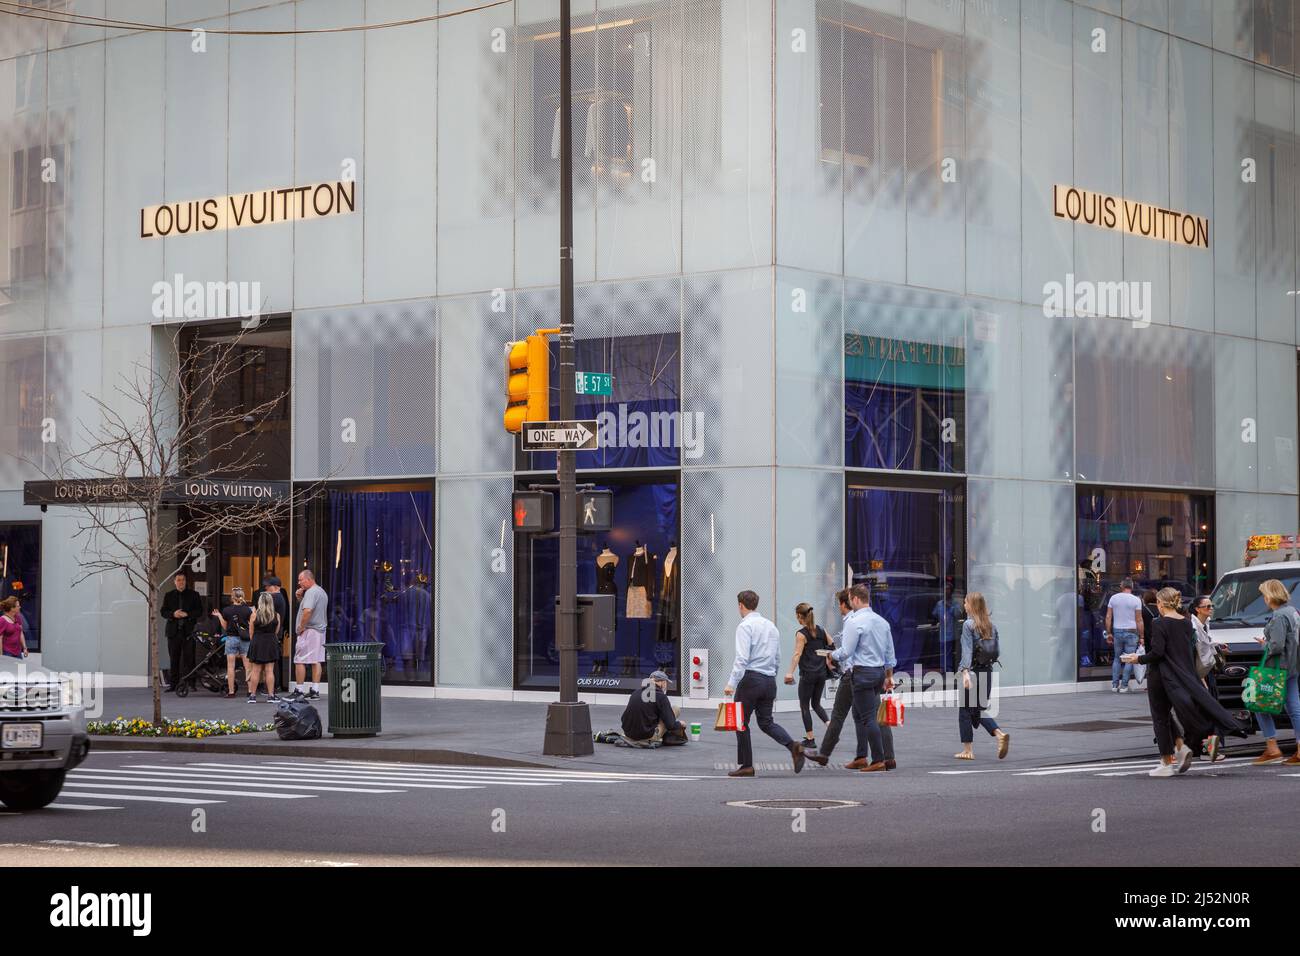 Louis Vuitton, casa de moda de lujo francesa, Fifth Avenue, Nueva York, NY, Estados Unidos. Foto de stock